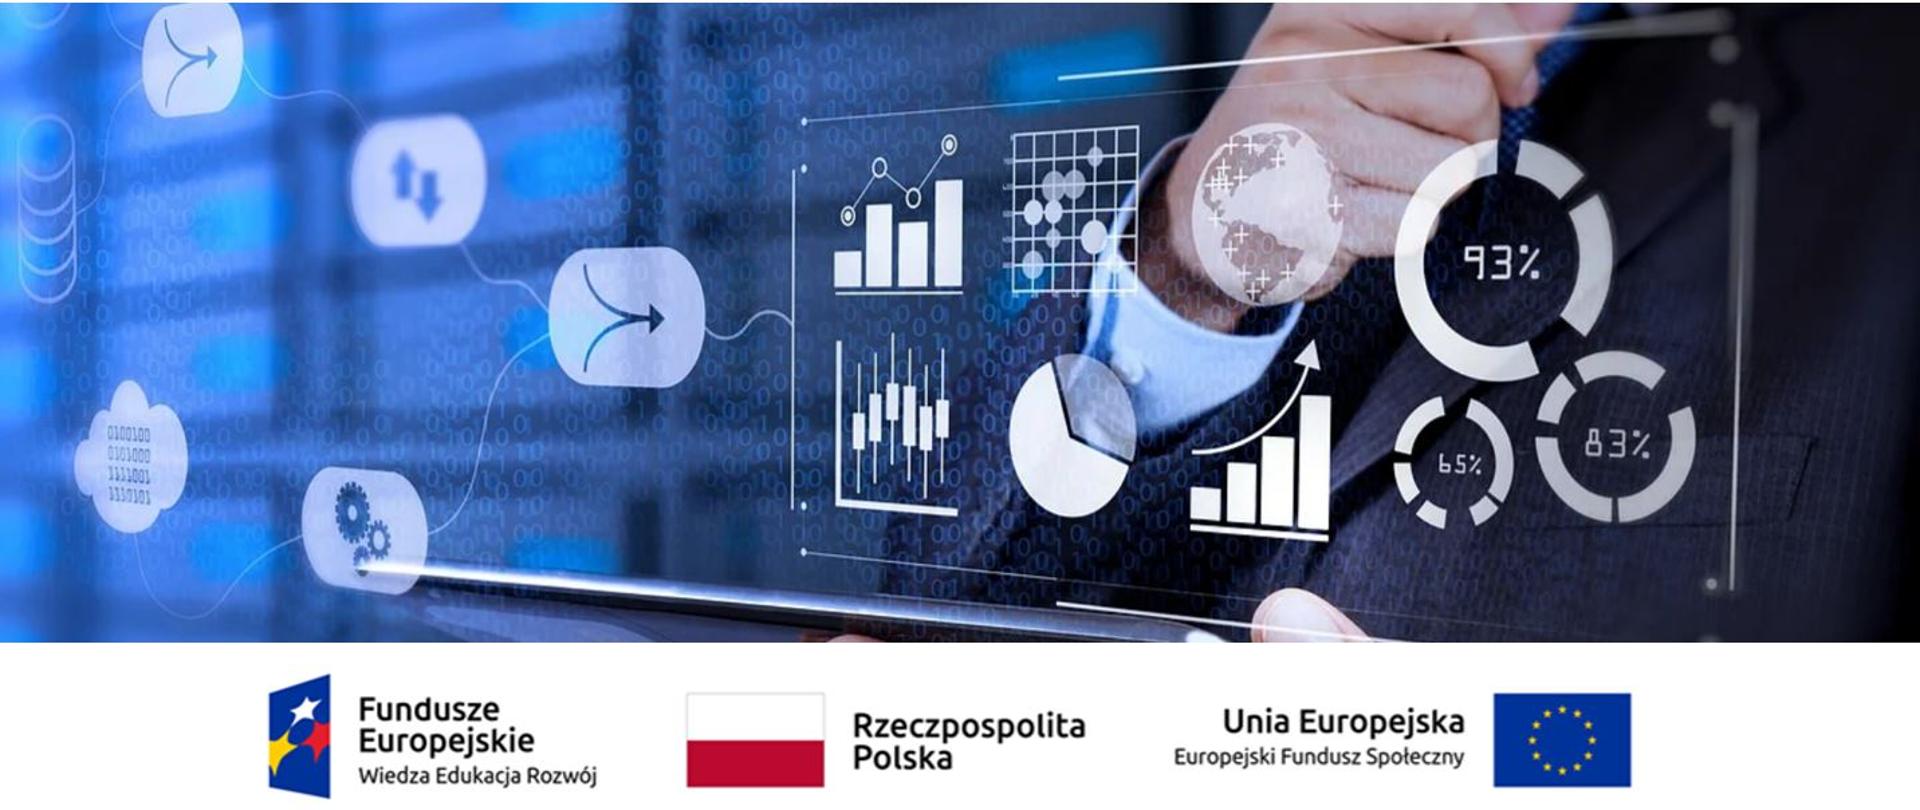 Dłoń w koszuli i garniturze, trzyma otwarty tablet, na którym jest wiele wykresów na granatowym tle. Pod obrazkiem 3 loga: funduszy europejskich, flaga Rzeczpospolitej Polskiej oraz Unii Europejskiej - europejskiego funduszu społecznego.